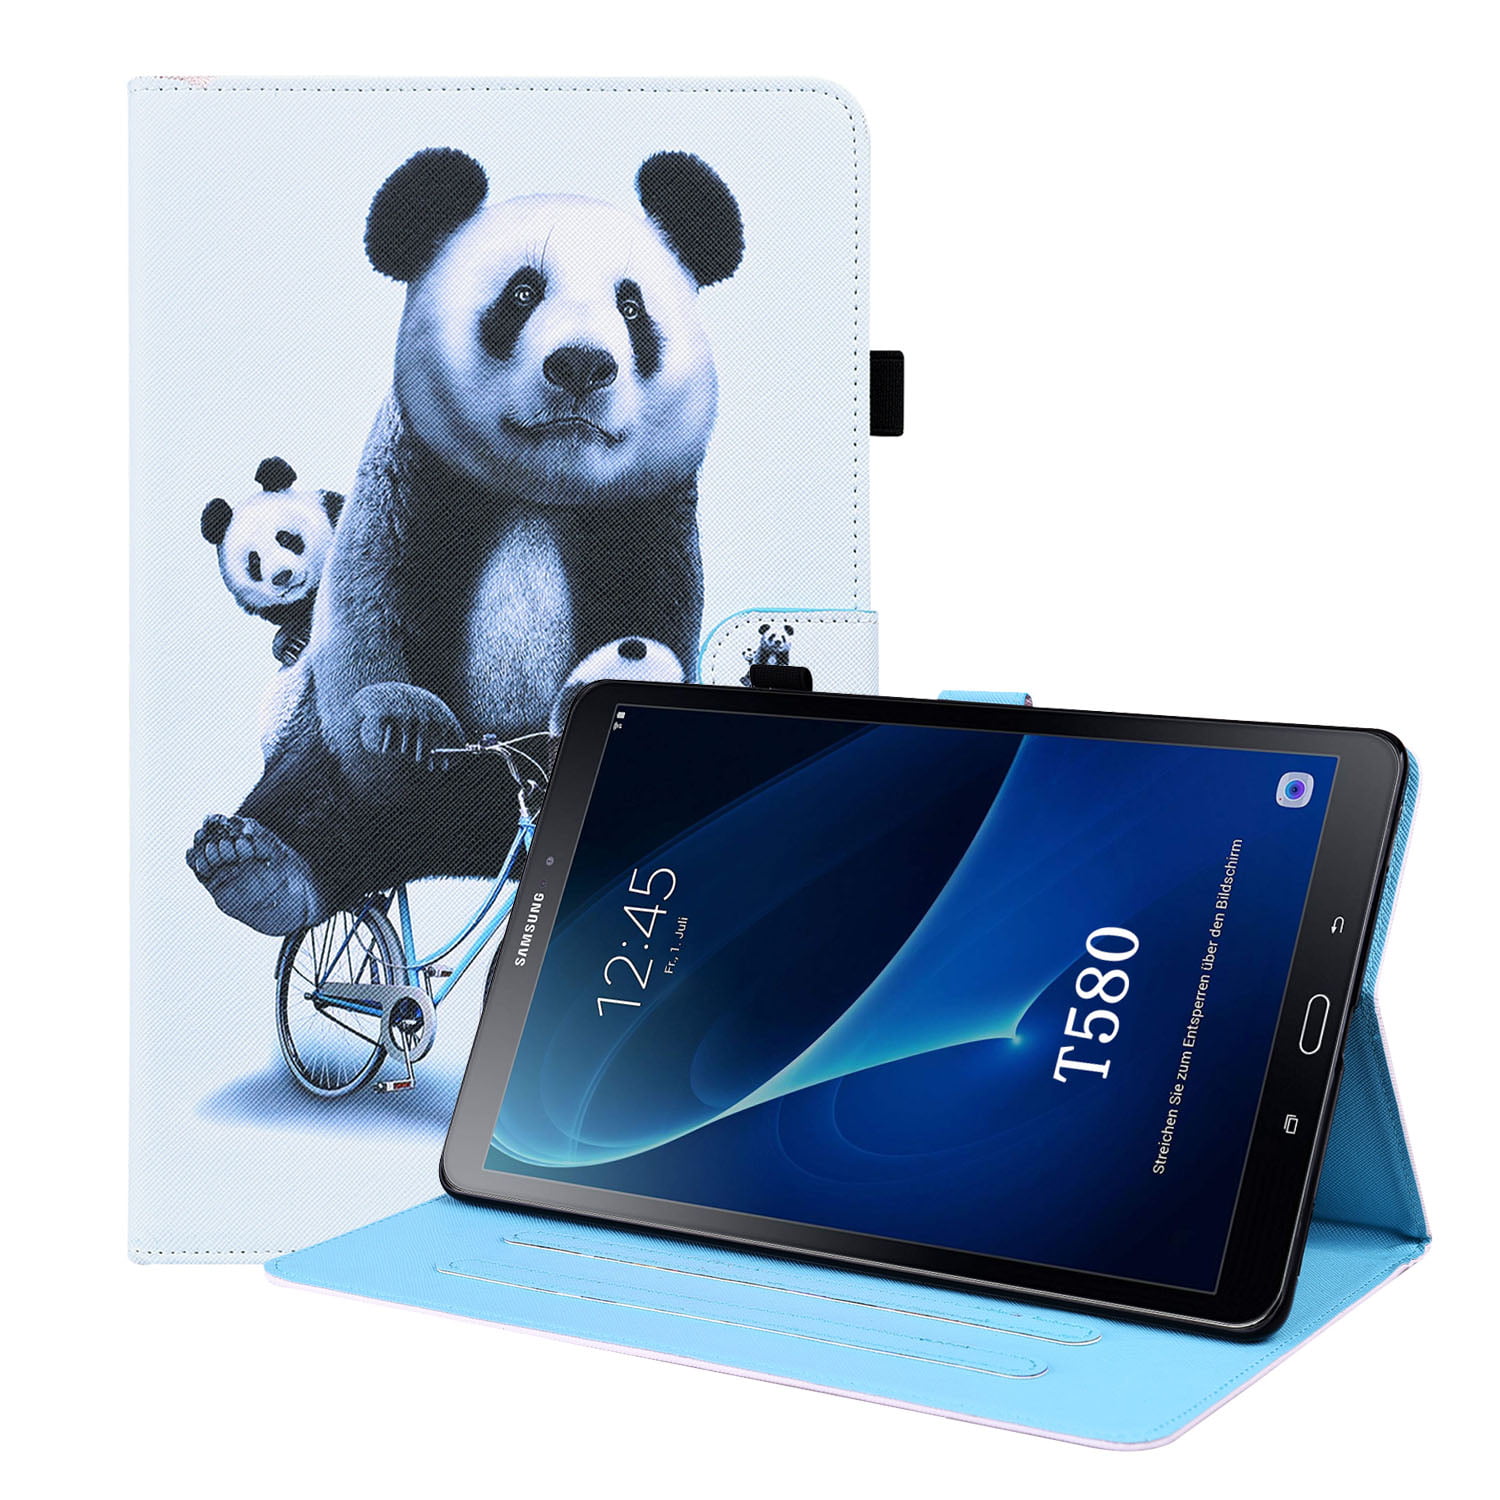 Funda Tablet 10 Pulgadas for Samaung Galaxy Tab A A6 10.1 2016 T580  Tablette Pouce Galaxy Tab A SM-T580 SM-T585 Tablet Holder